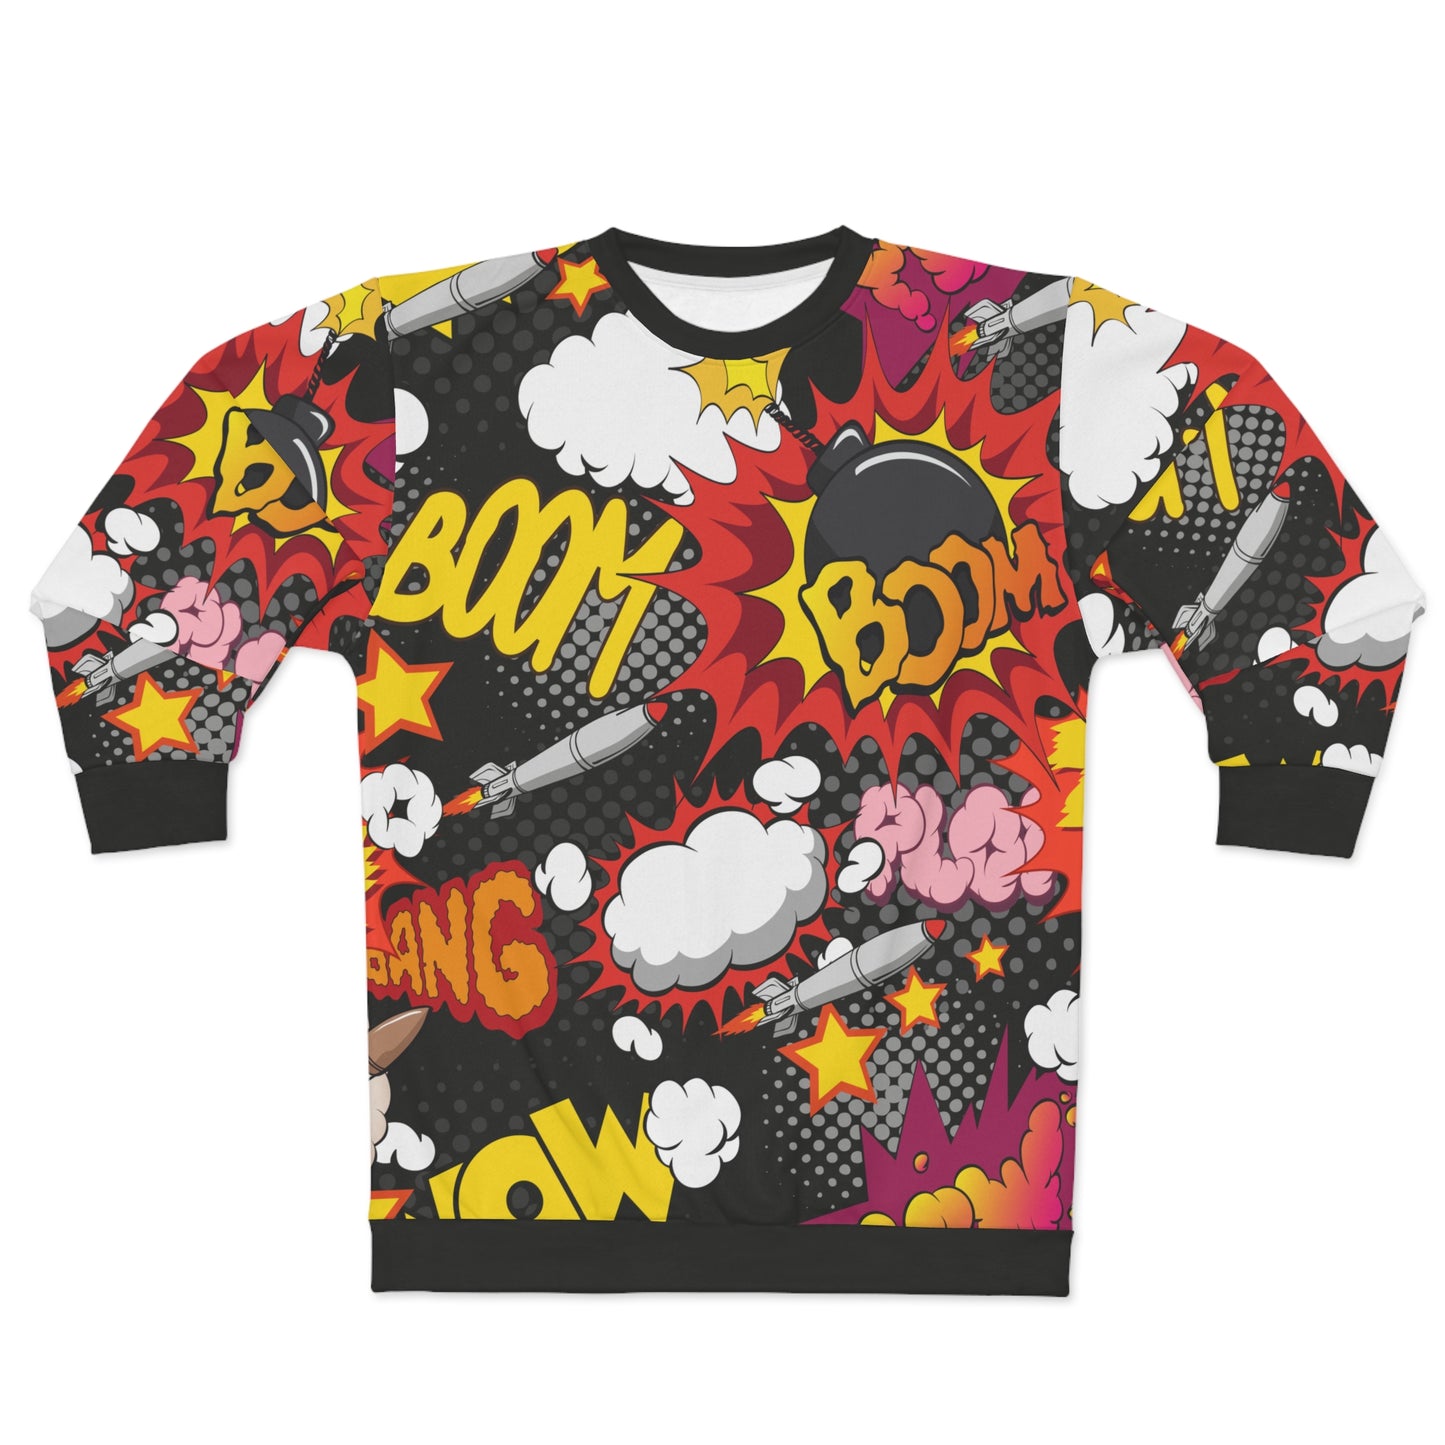 Comic Bomb Unisex Sweatshirt